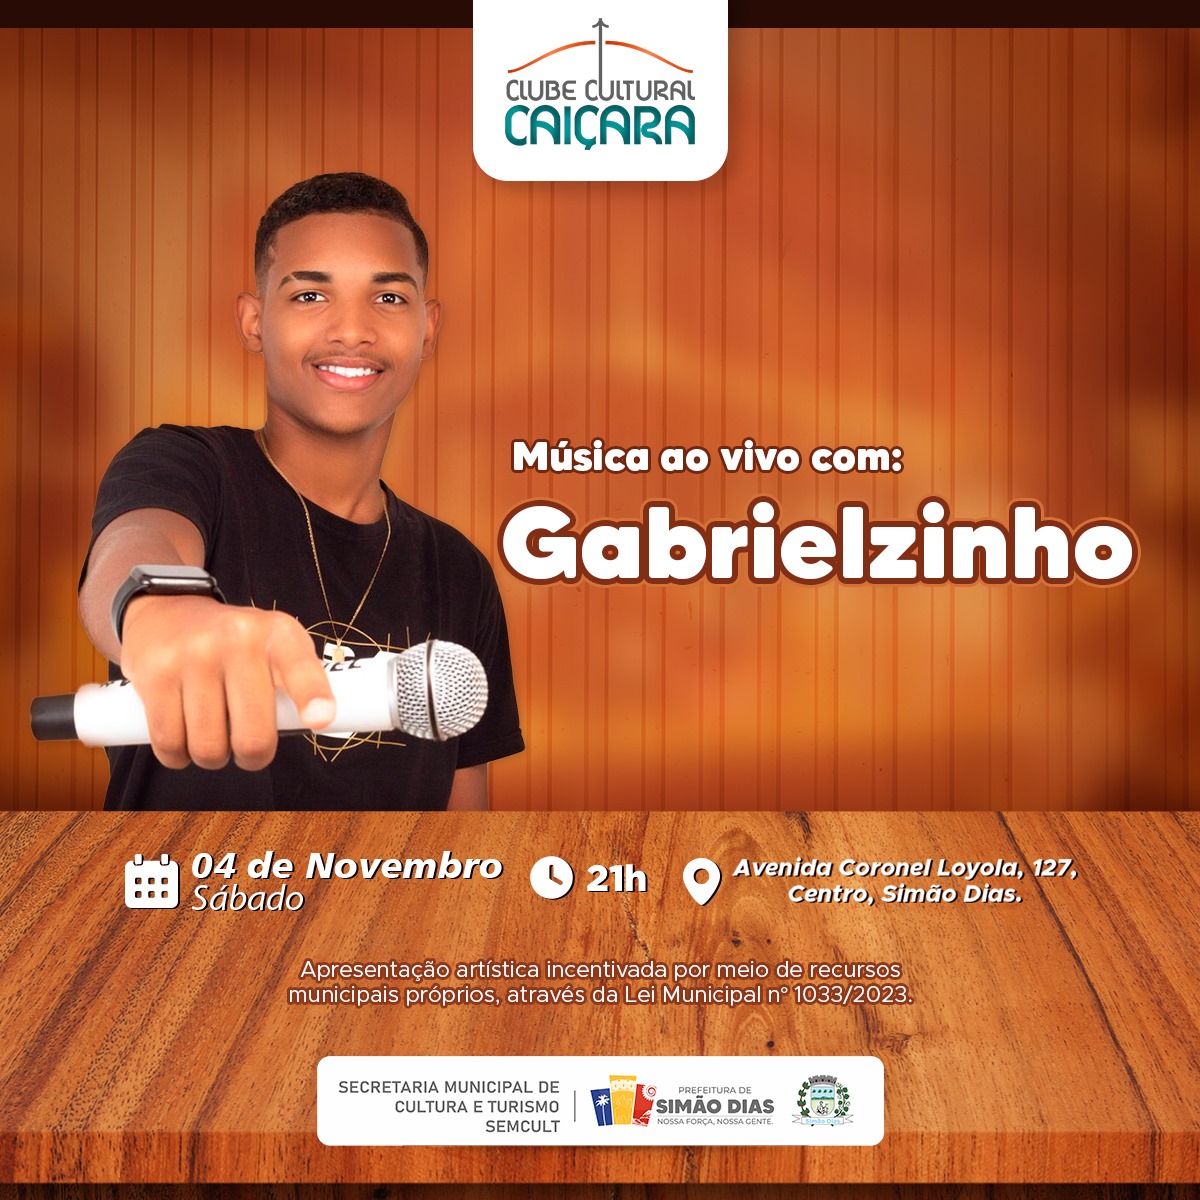 Simão Dias: Gabrielzinho anima o Clube Caiçara no final de semana